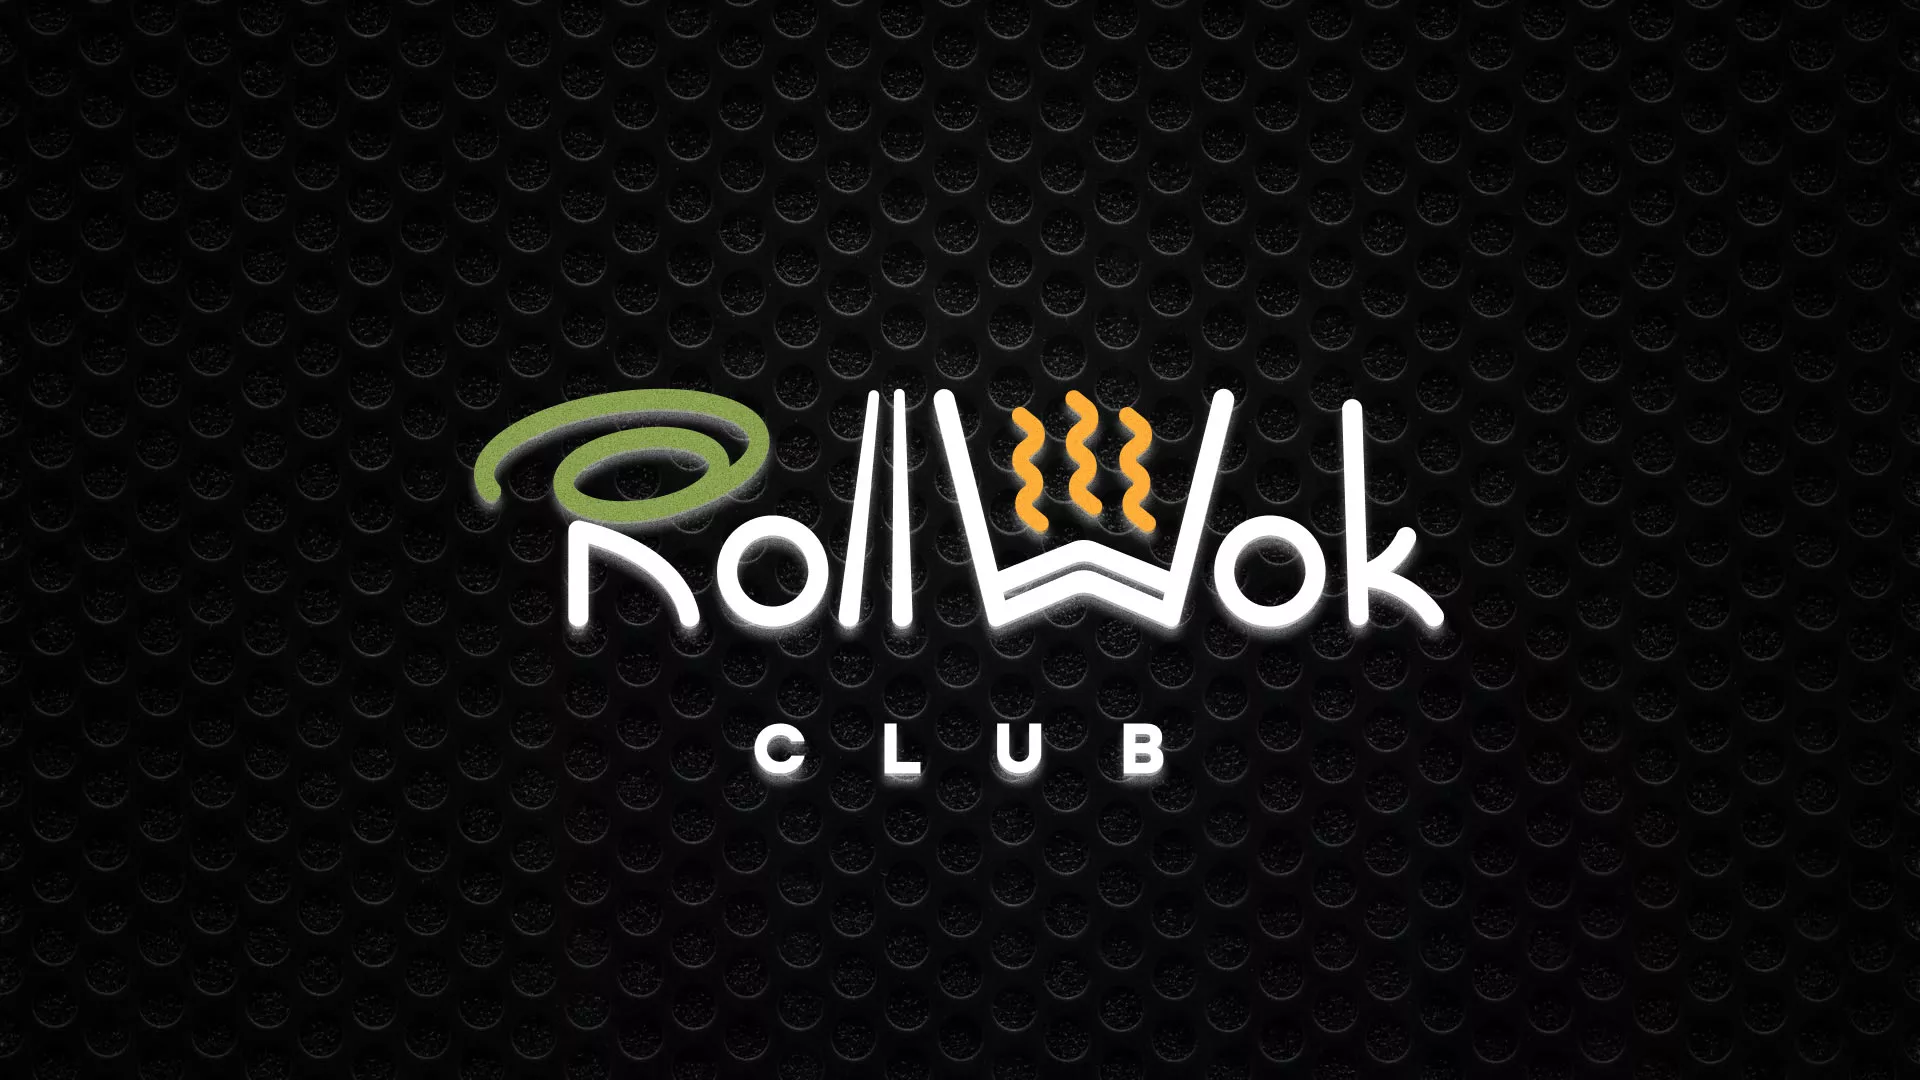 Брендирование торговых точек суши-бара «Roll Wok Club» в Звенигово